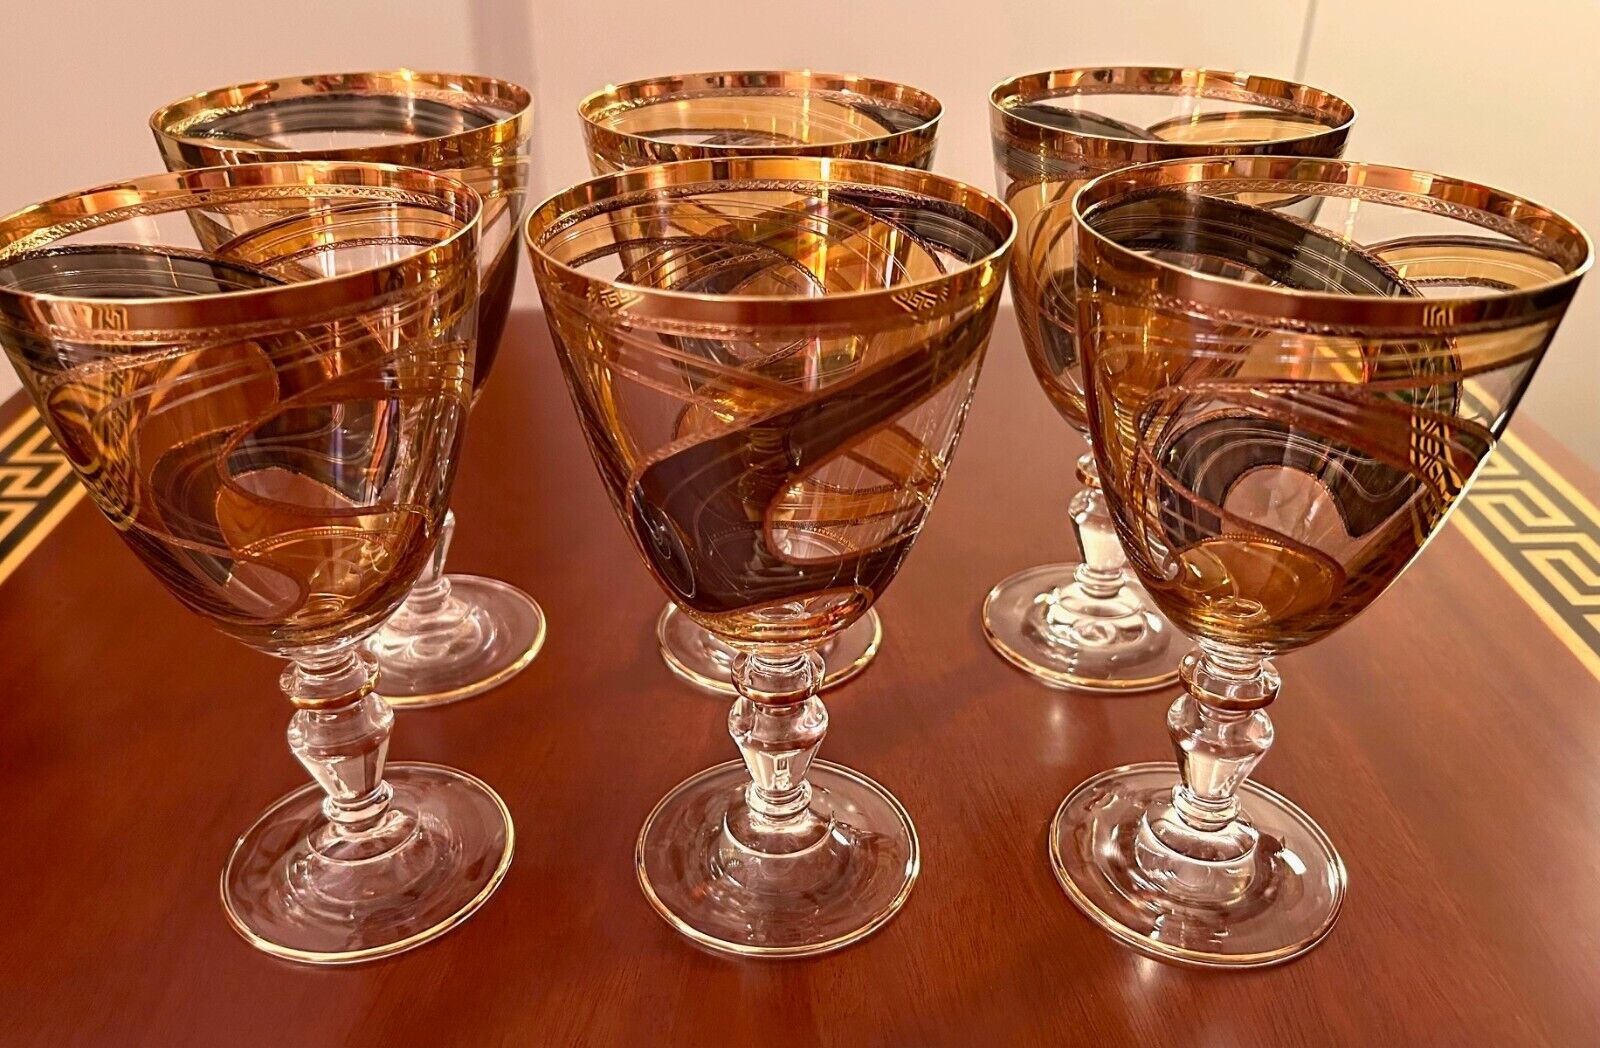 NEW, UNUSED Italian, Hand-Painted Wine Glasses - Set of 6 